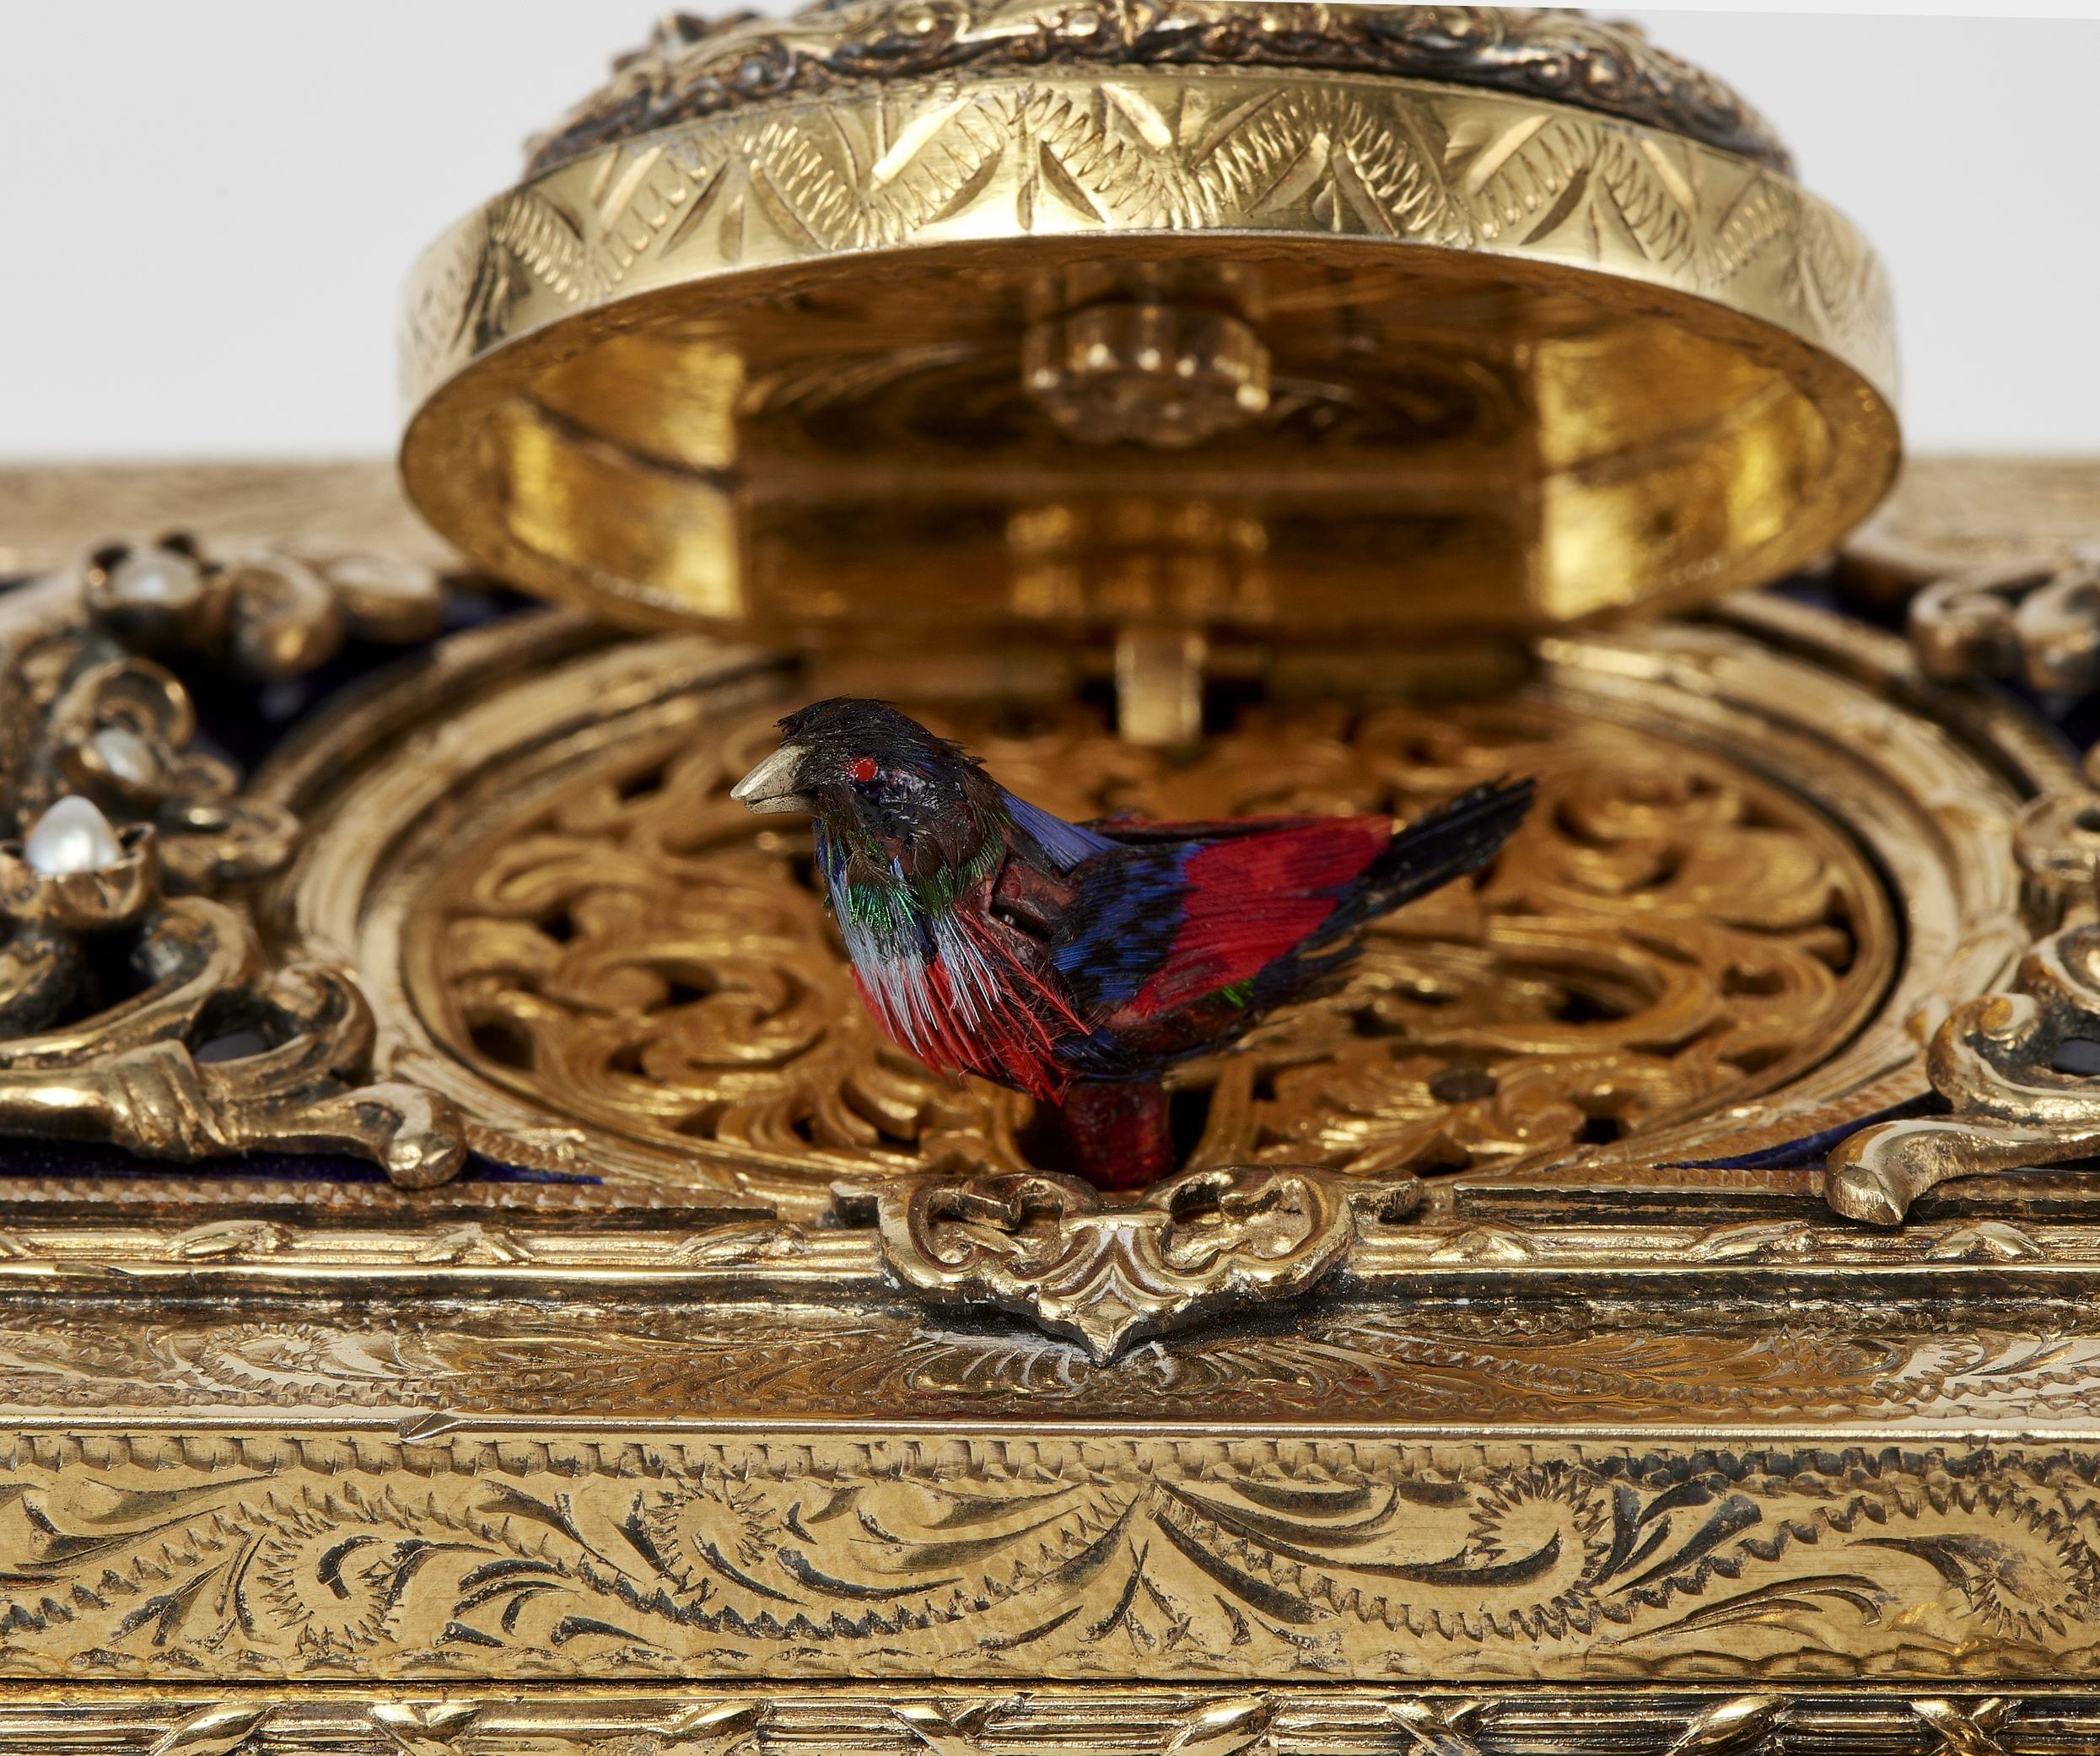 Boîte à oiseau chanteur à riche décor de volutes, gravée et ajourée, incrustée de perles et cabochons d'émeraudes et grenats